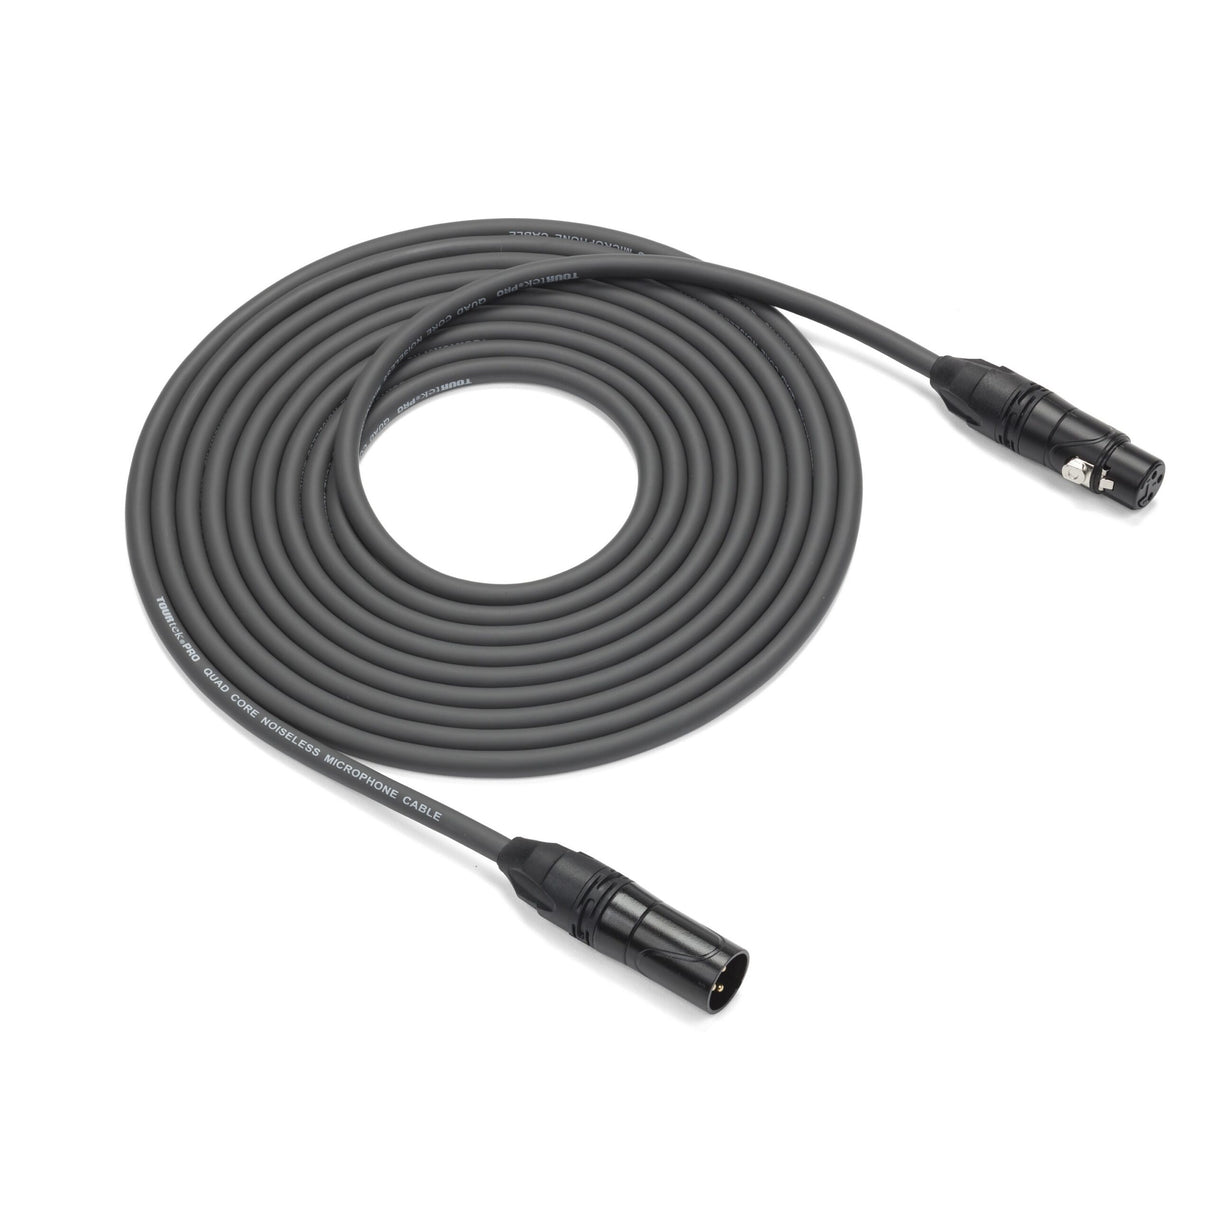 Samson Tourtek Pro TPMQ Quad Core Microphone Cable, 15 Foot